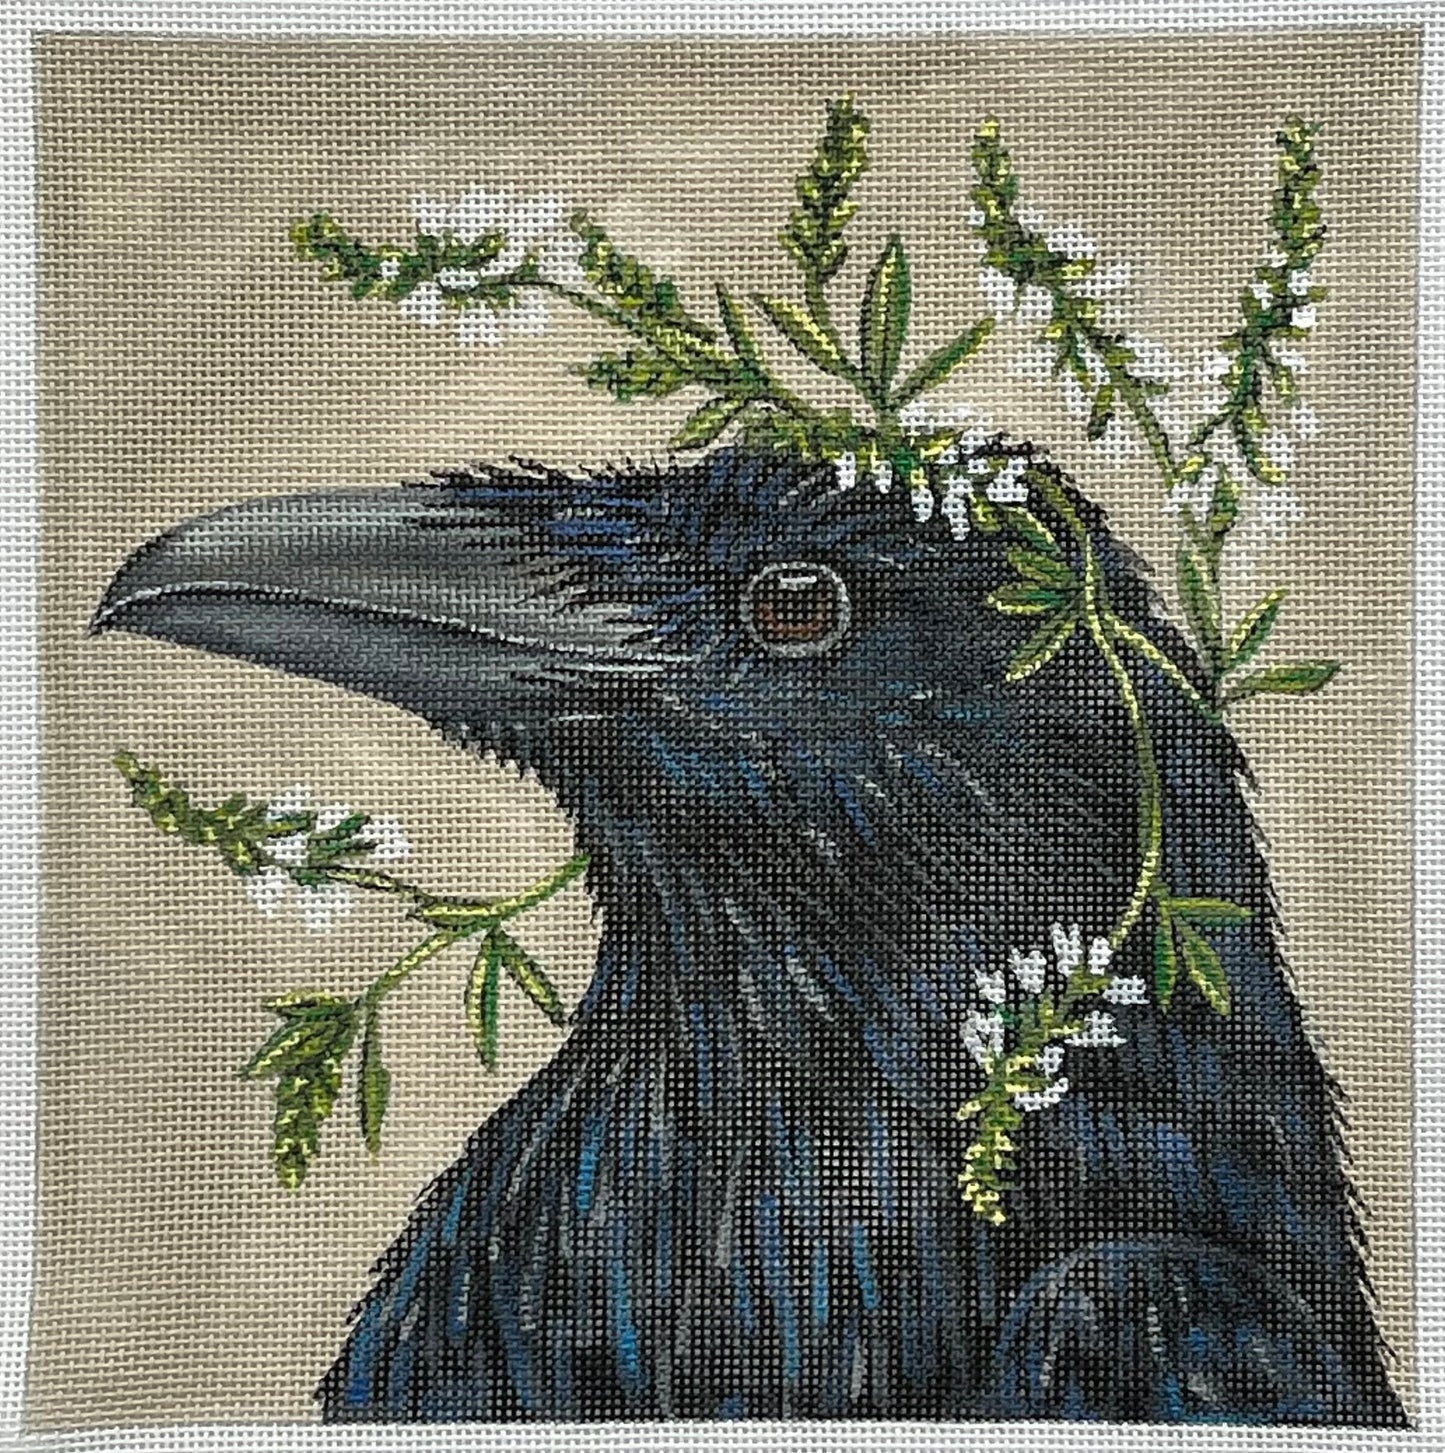 Beautiful Crow